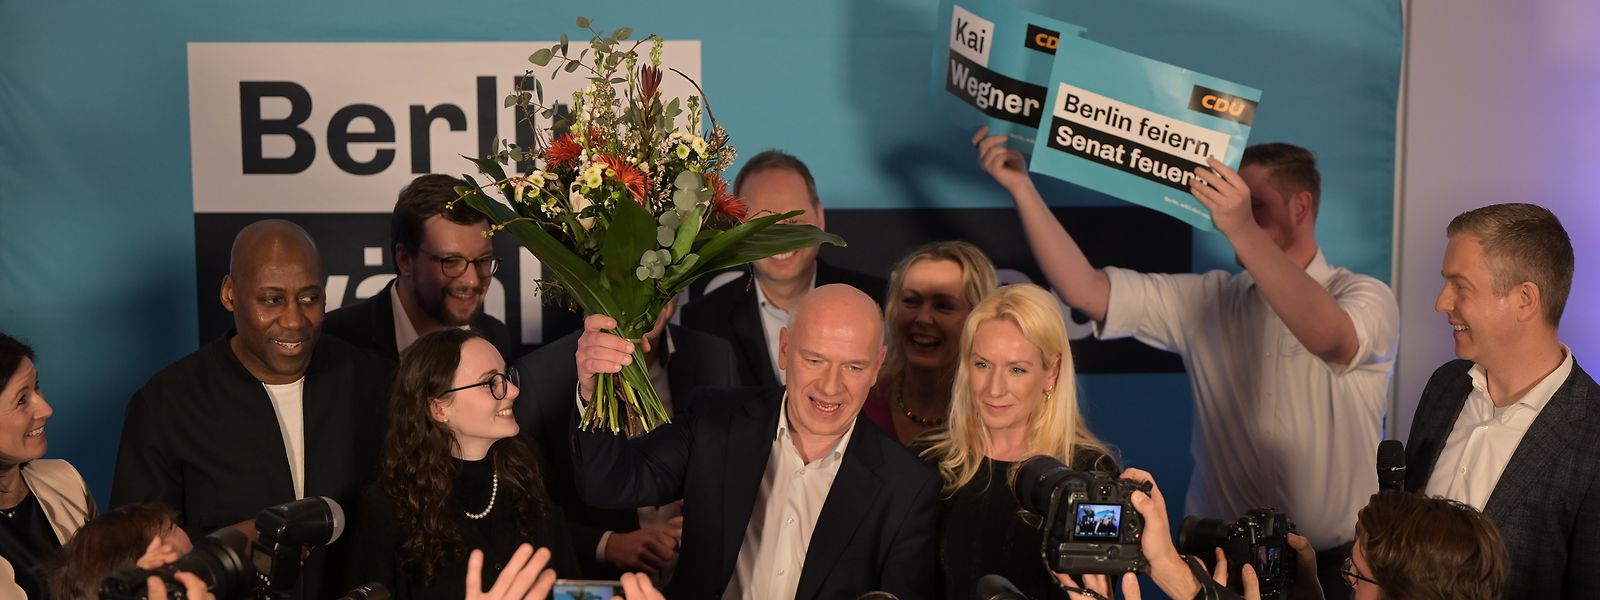 CDU-Spitzenkandidat Kai Wegner steht mit einem Blumenstrauß in der Hand neben seiner Partnerin Kathleen Kantar auf der Bühne der CDU-Wahlparty.